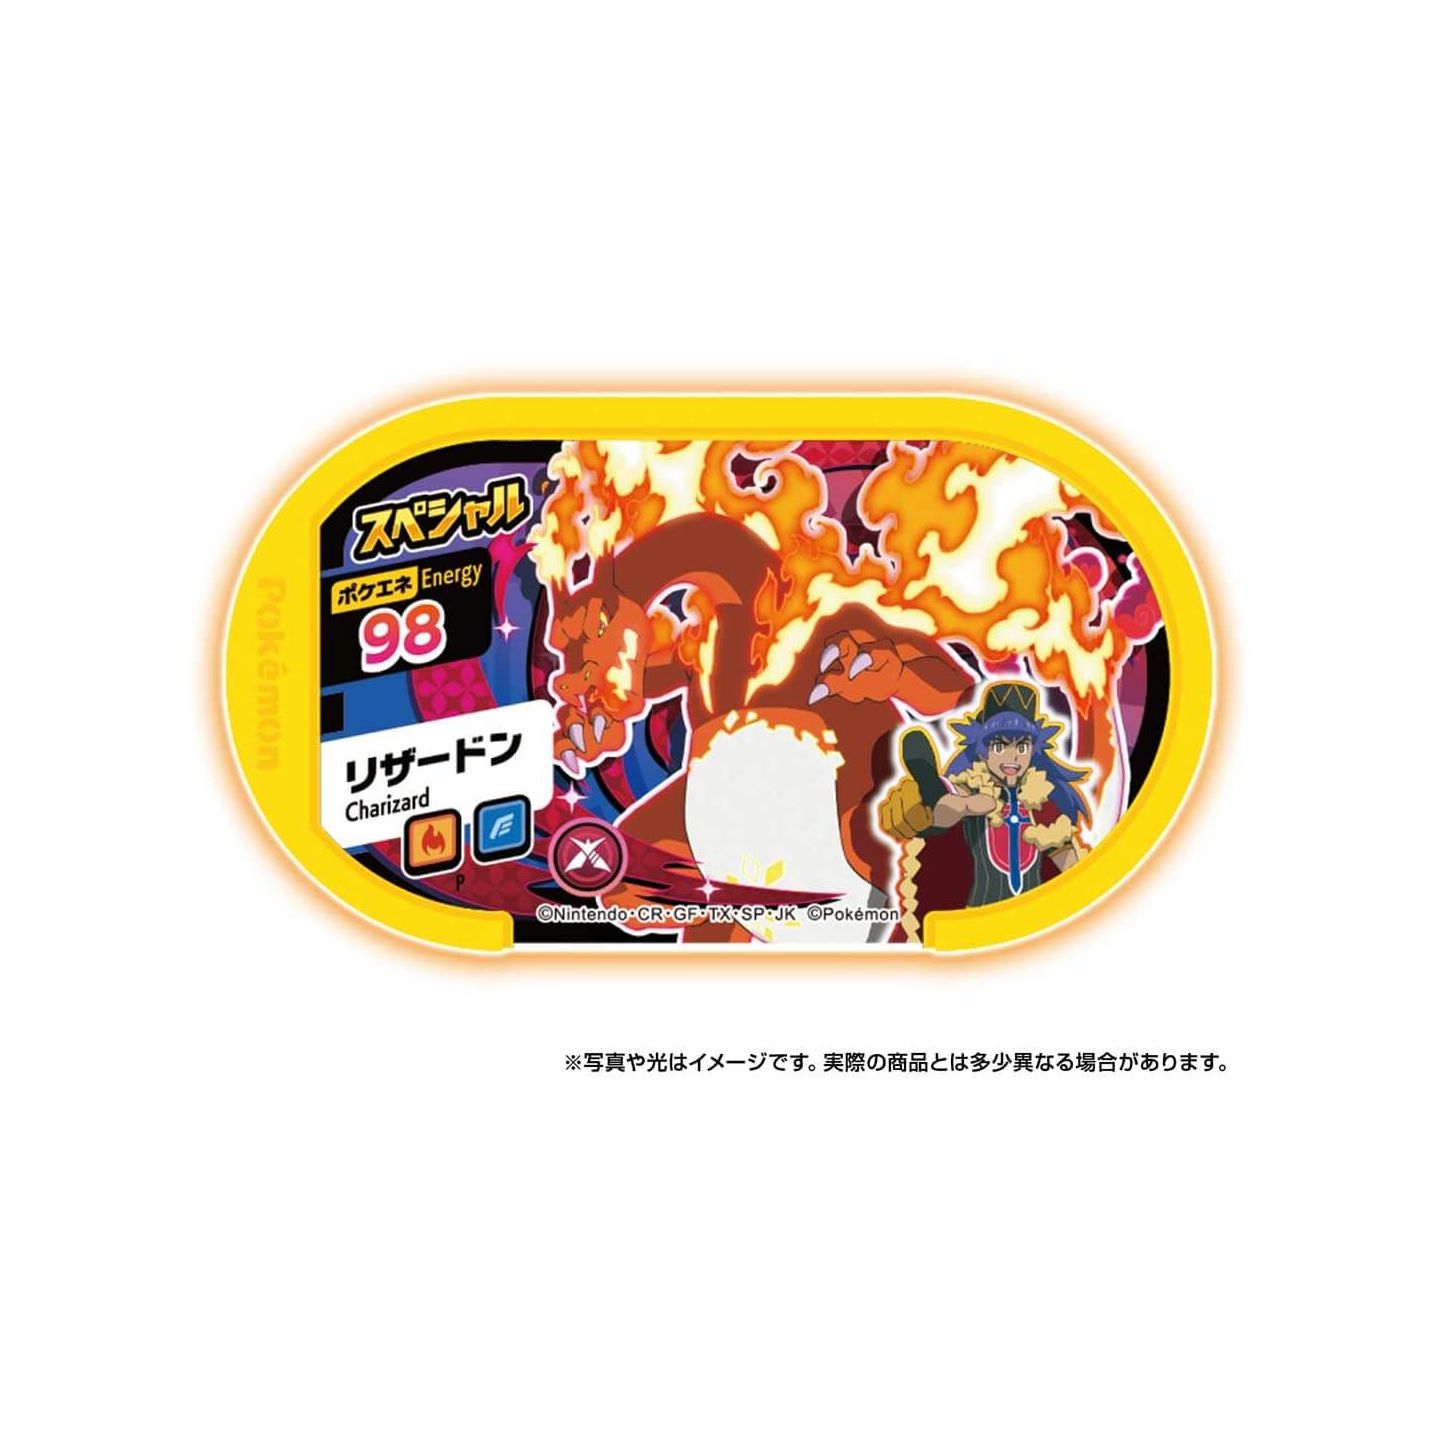 Pokemon Dynamax Band Takara Tomy Anime Goods Toy